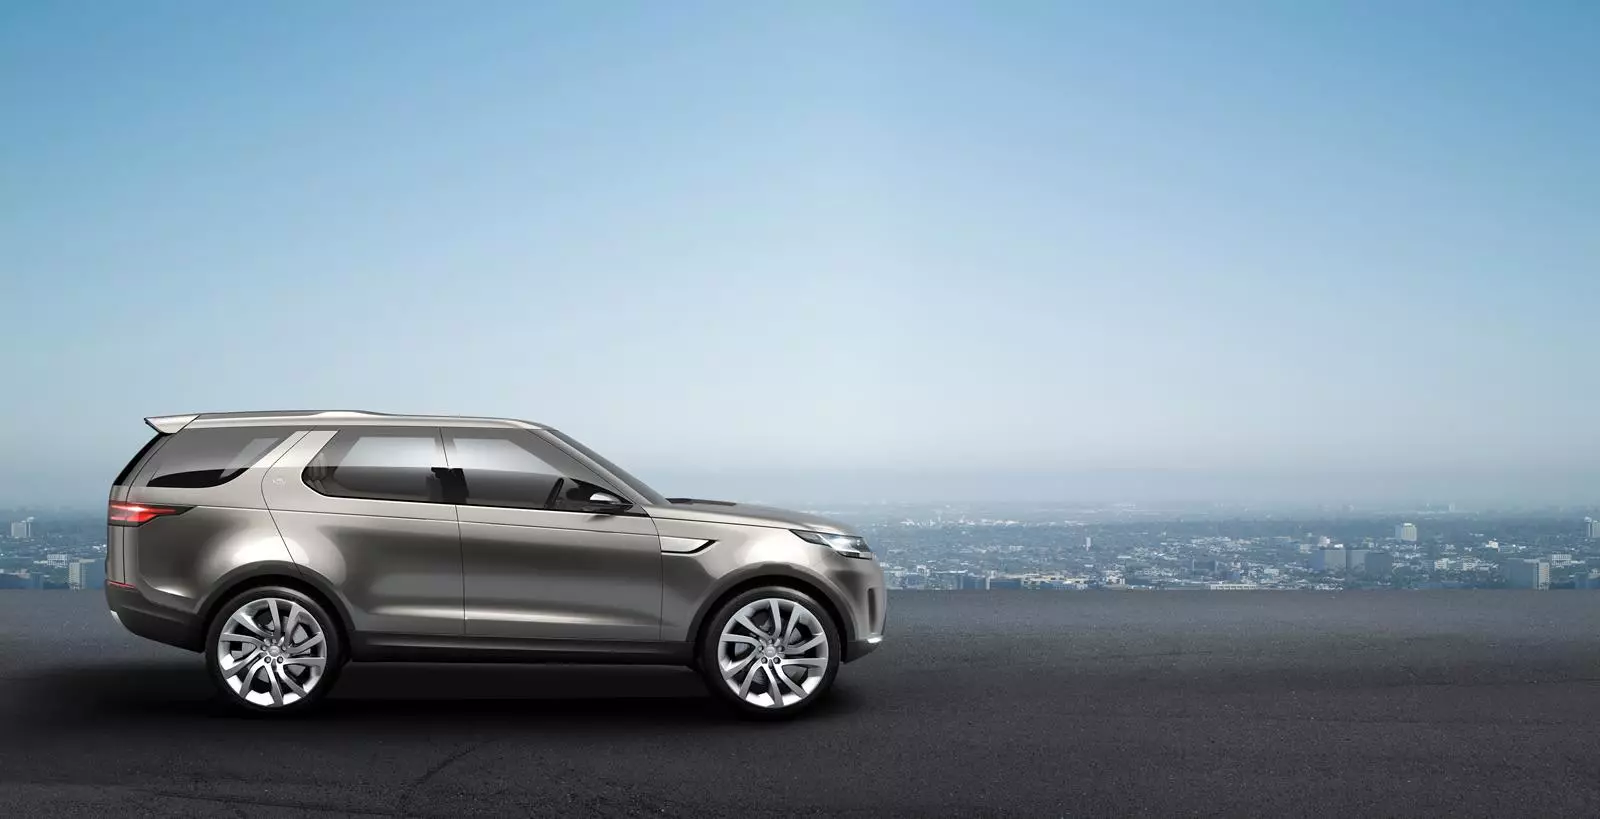 Neues Land Rover Discovery Vision Concept: So sieht die Zukunft der britischen Marke aus 25411_2